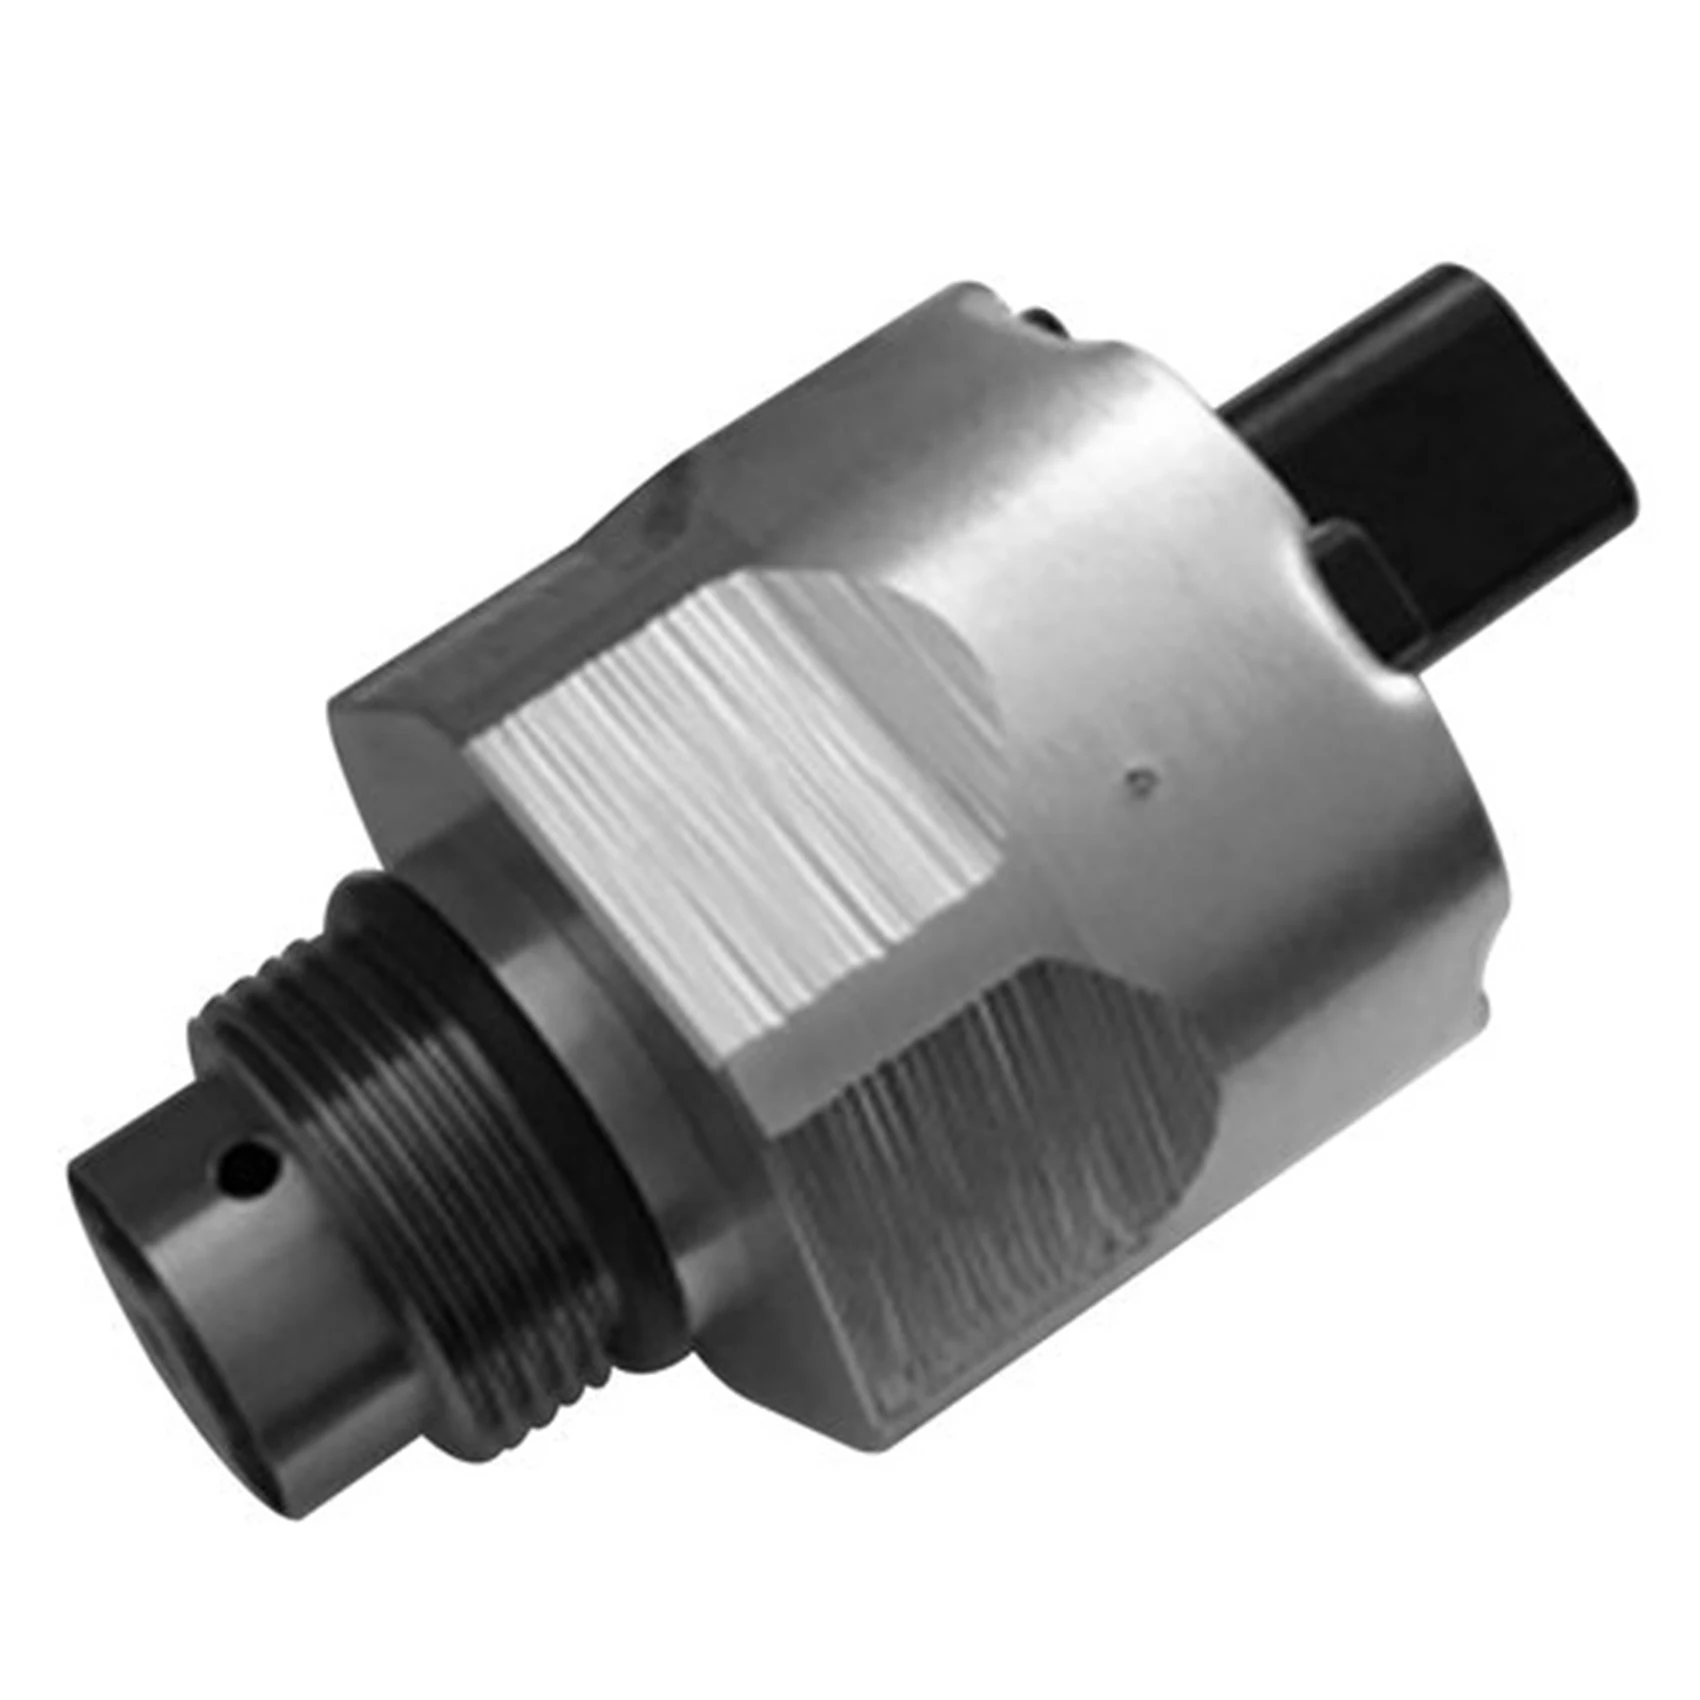 

Клапан регулирования давления автомобиля A2C59506225 для Siemens VDO регулирующий клапан регулирования давления/DRV, Ford Citroen